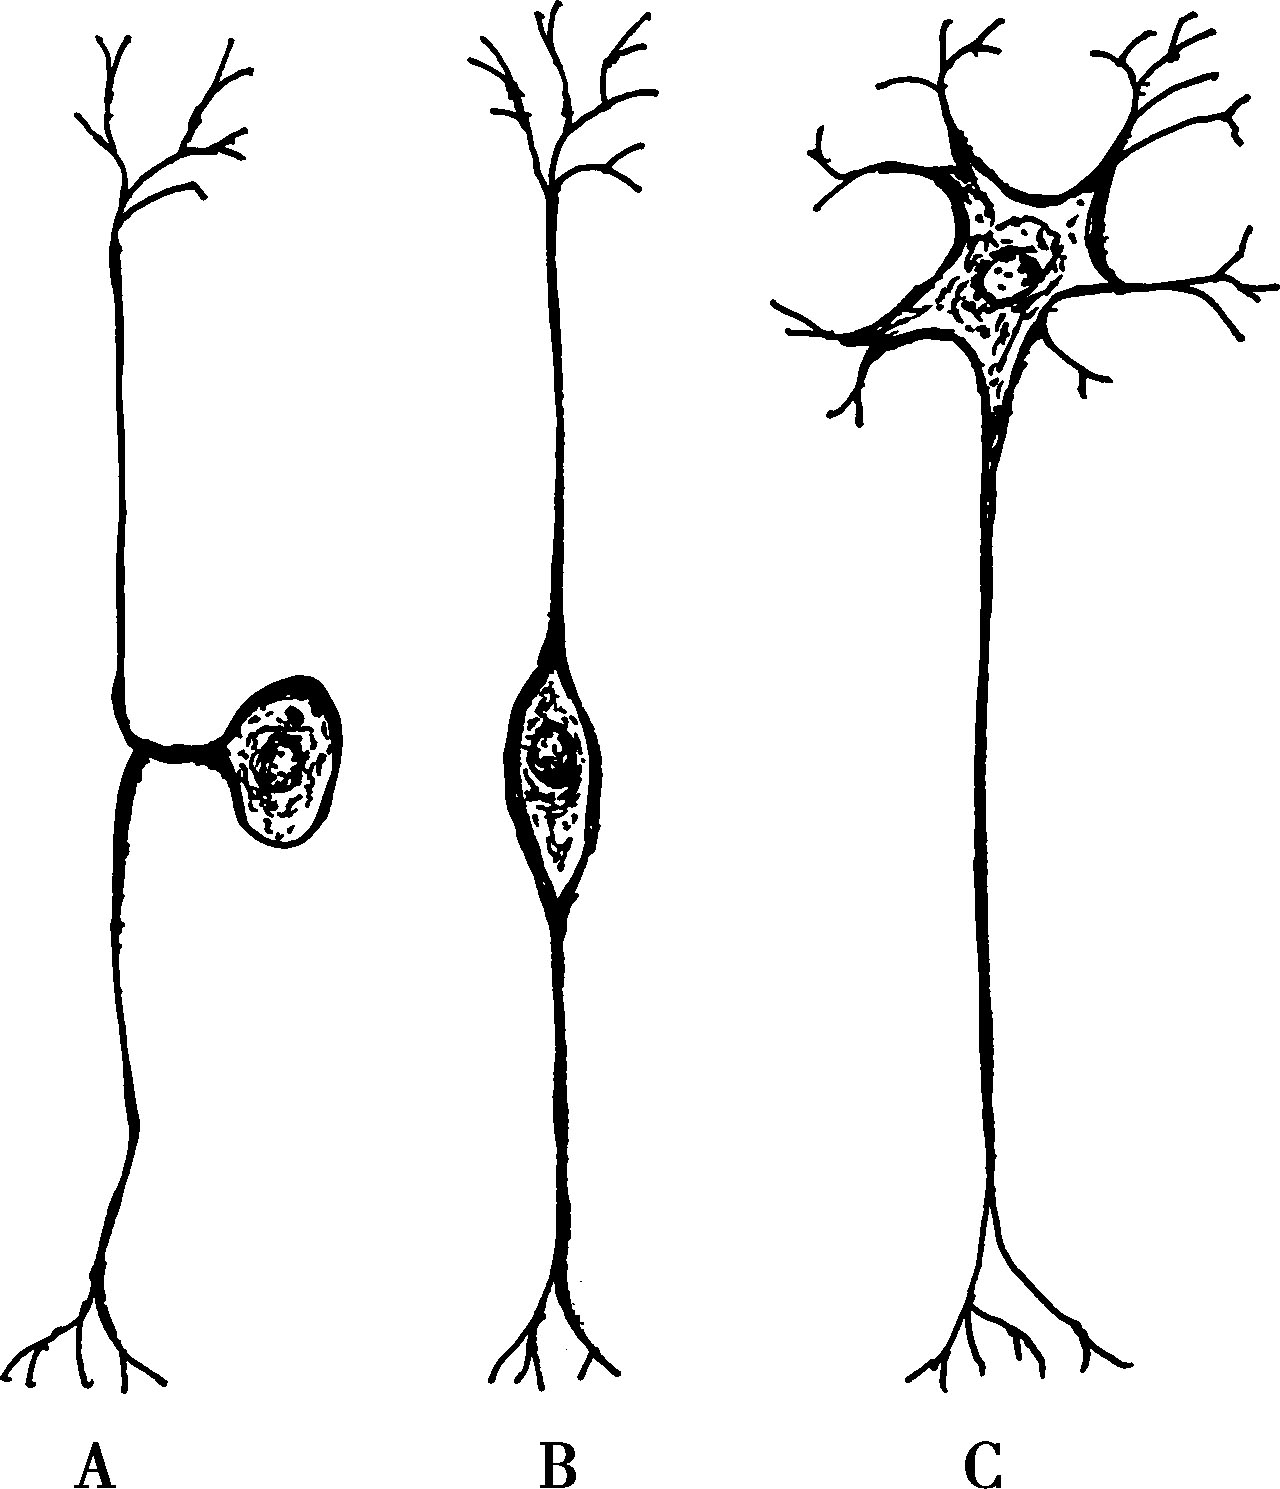 图2-2-3 神经元基本形态